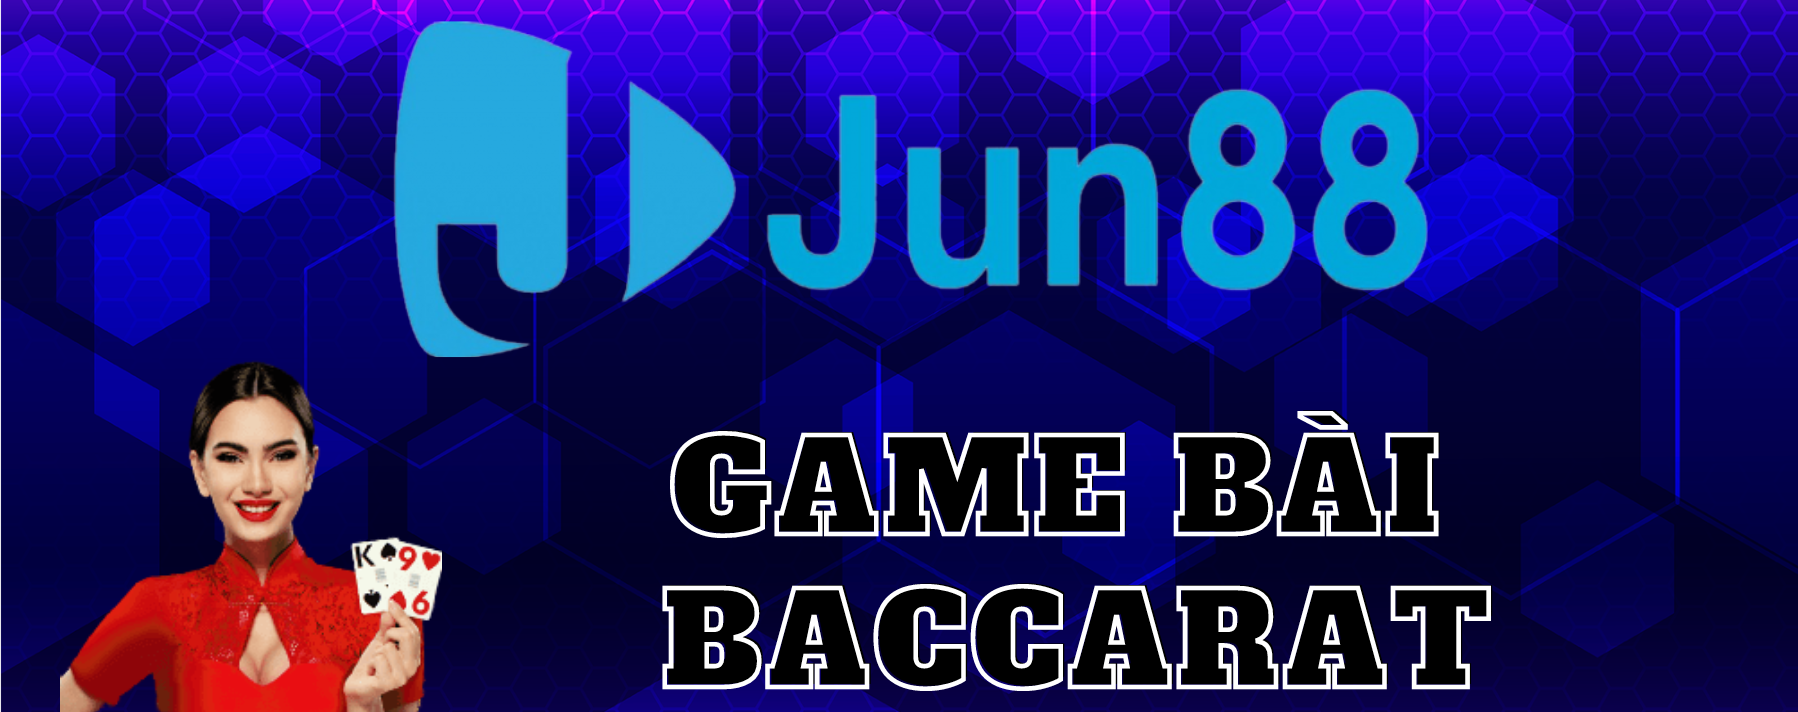 Jun88 cung cấp đa dạng các loại cầu trong baccarat để đáp ứng nhu cầu cho các cược thủ